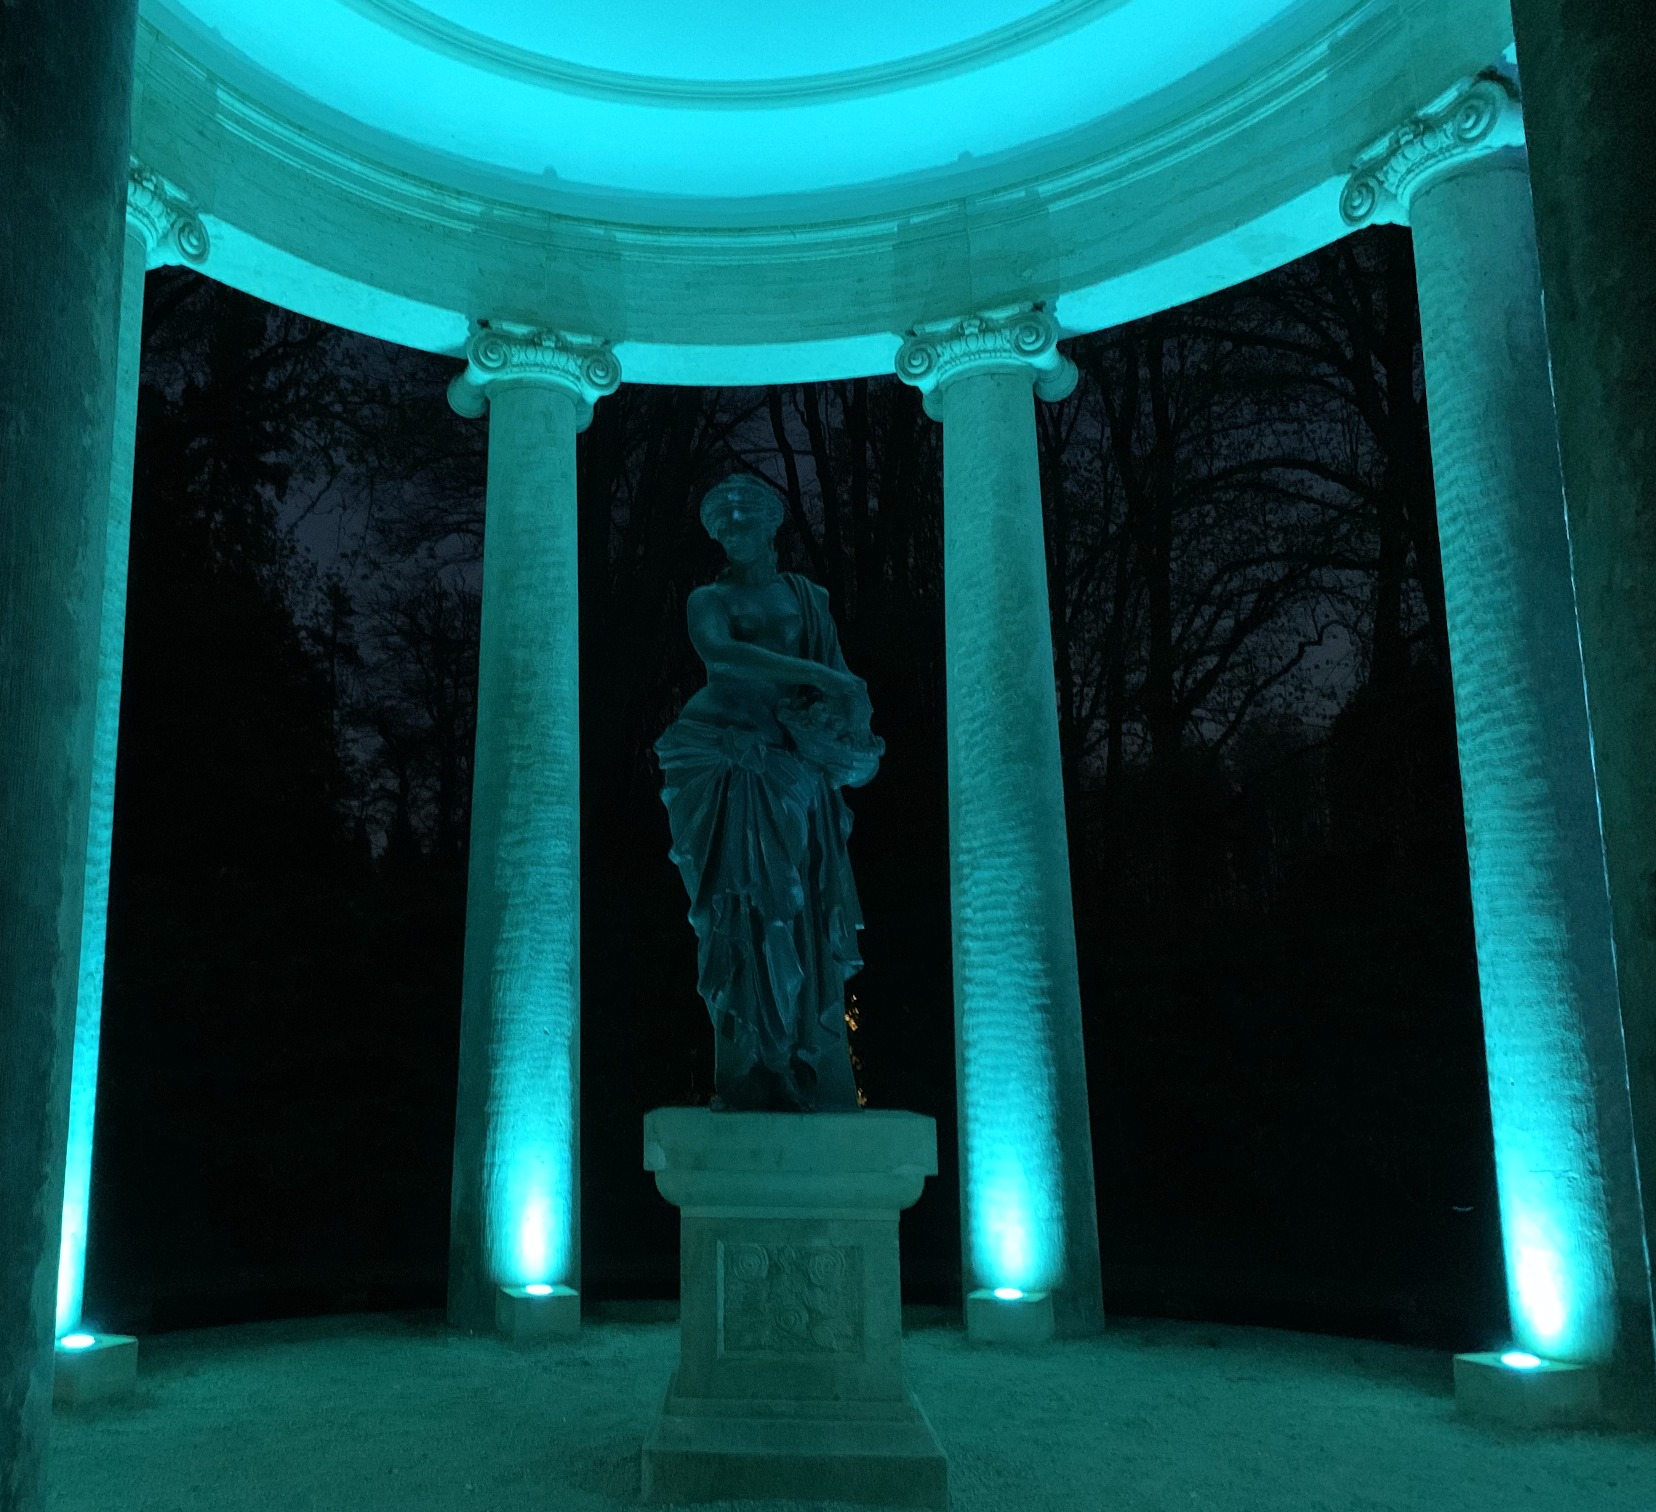 Statue trkisblau angeleuchtet vor Sulen. Dahinter die Nacht.